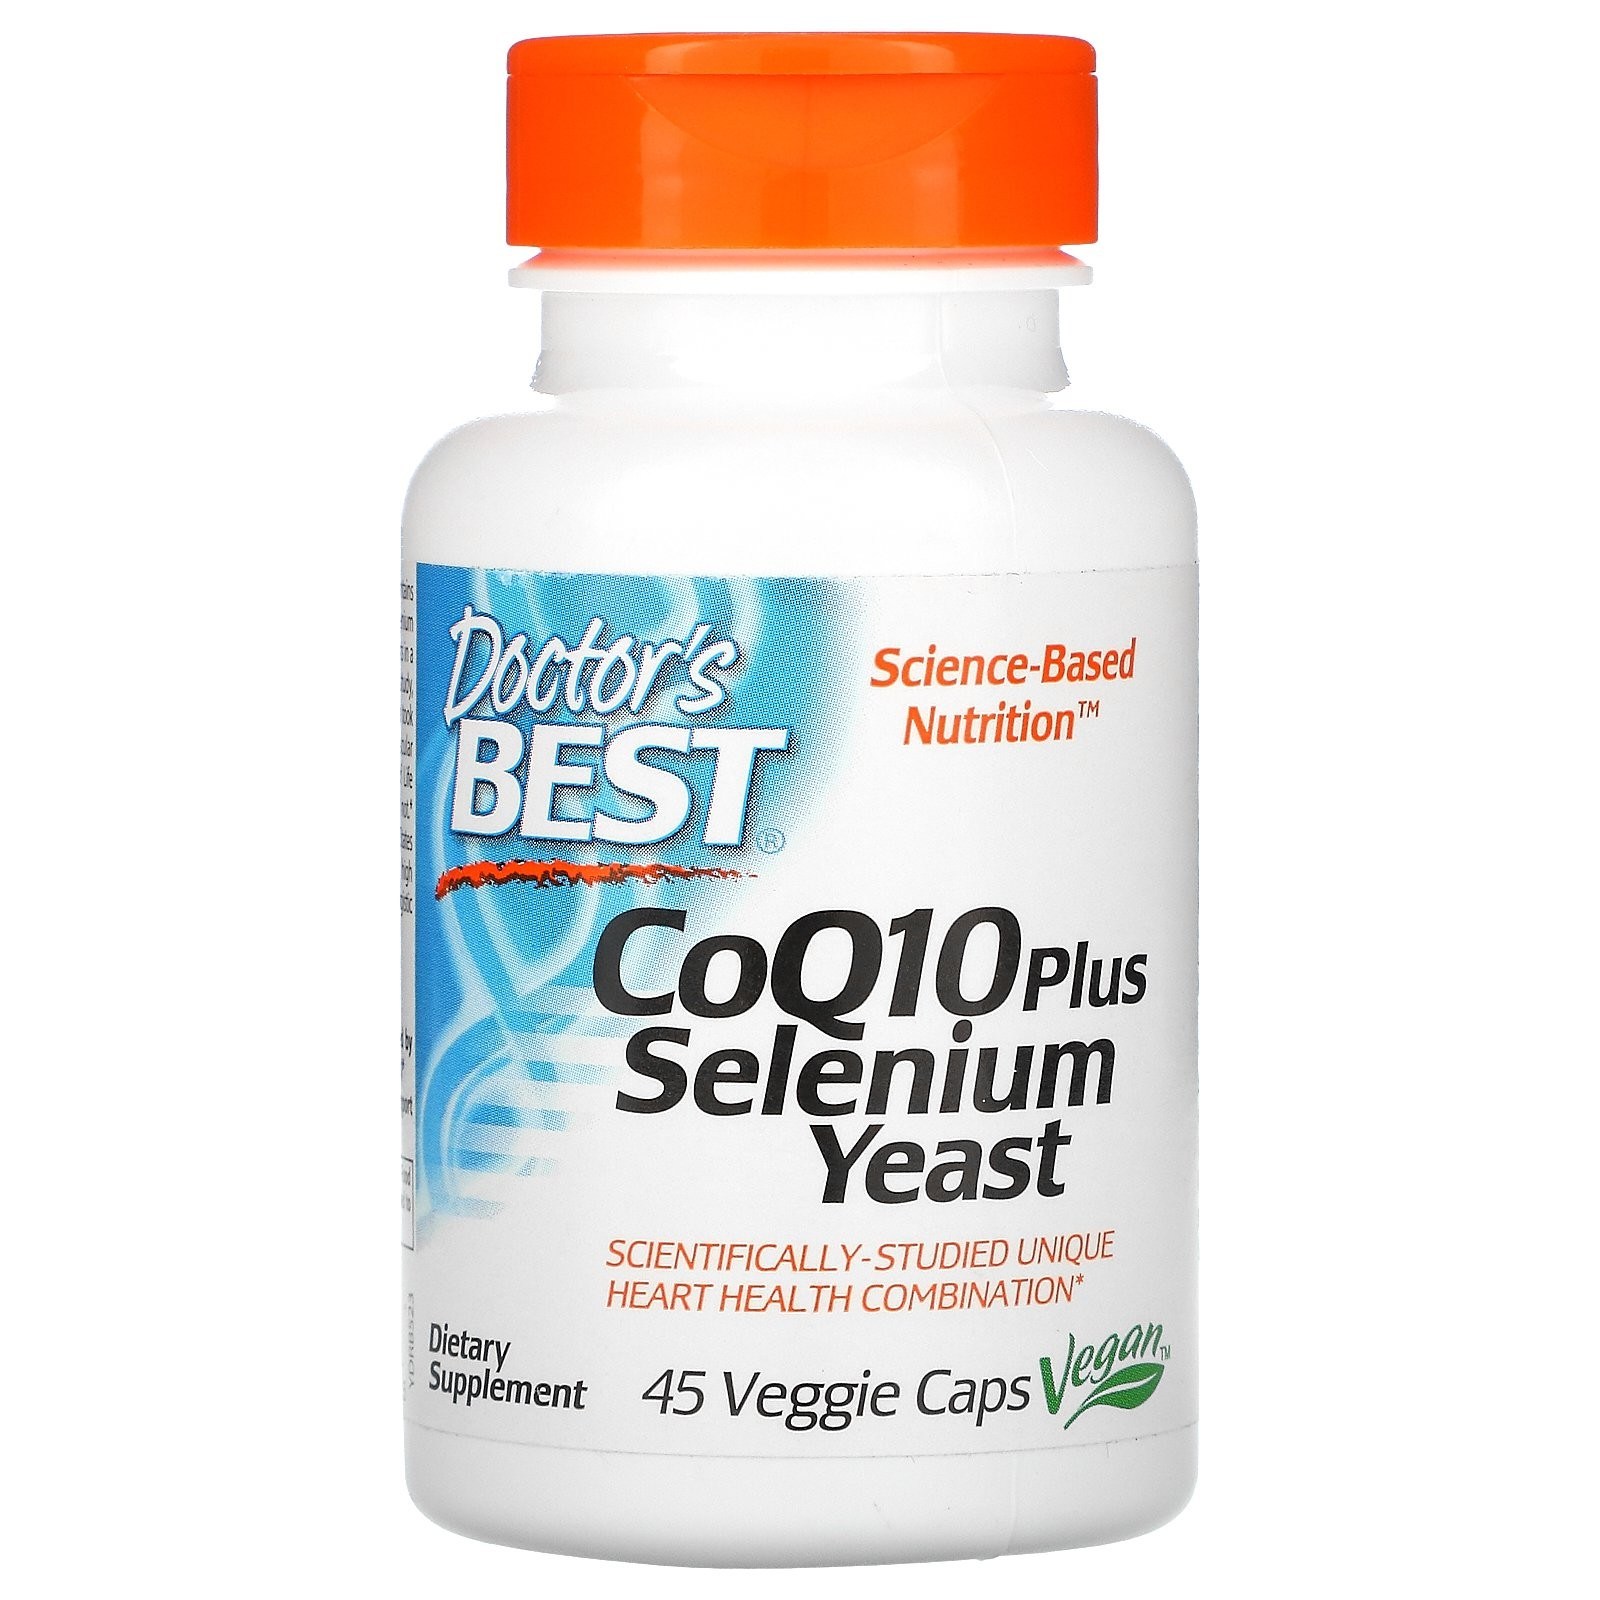 Doctors Best <b>CoQ10 Plus Selenium Yeast</b> 45 Veggie Caps  45정  1개